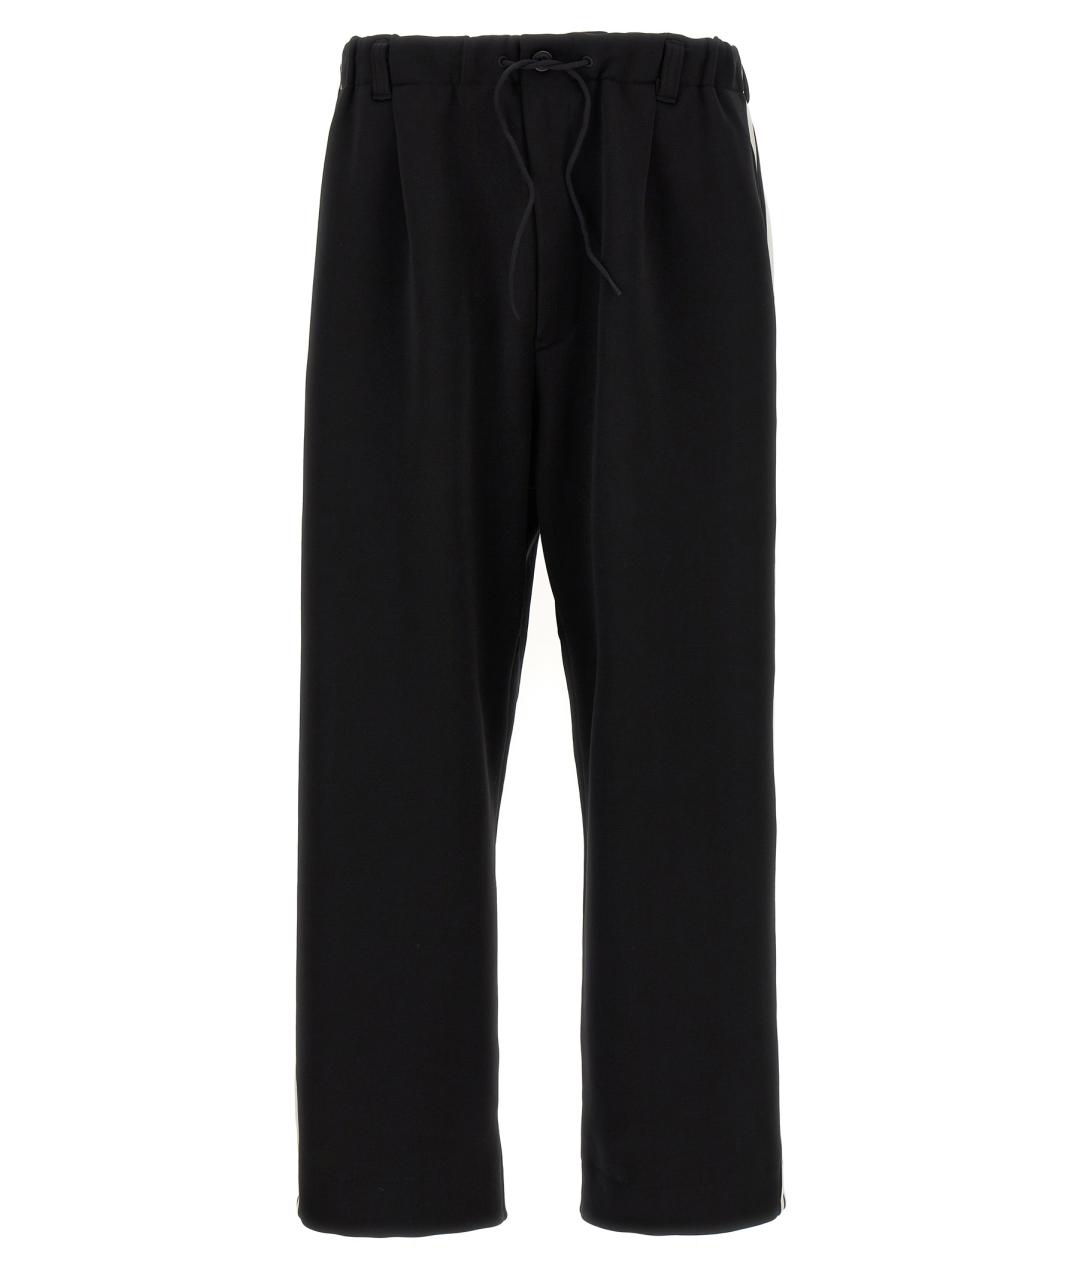 Y-3 Черные полиамидовые спортивные брюки и шорты, фото 1